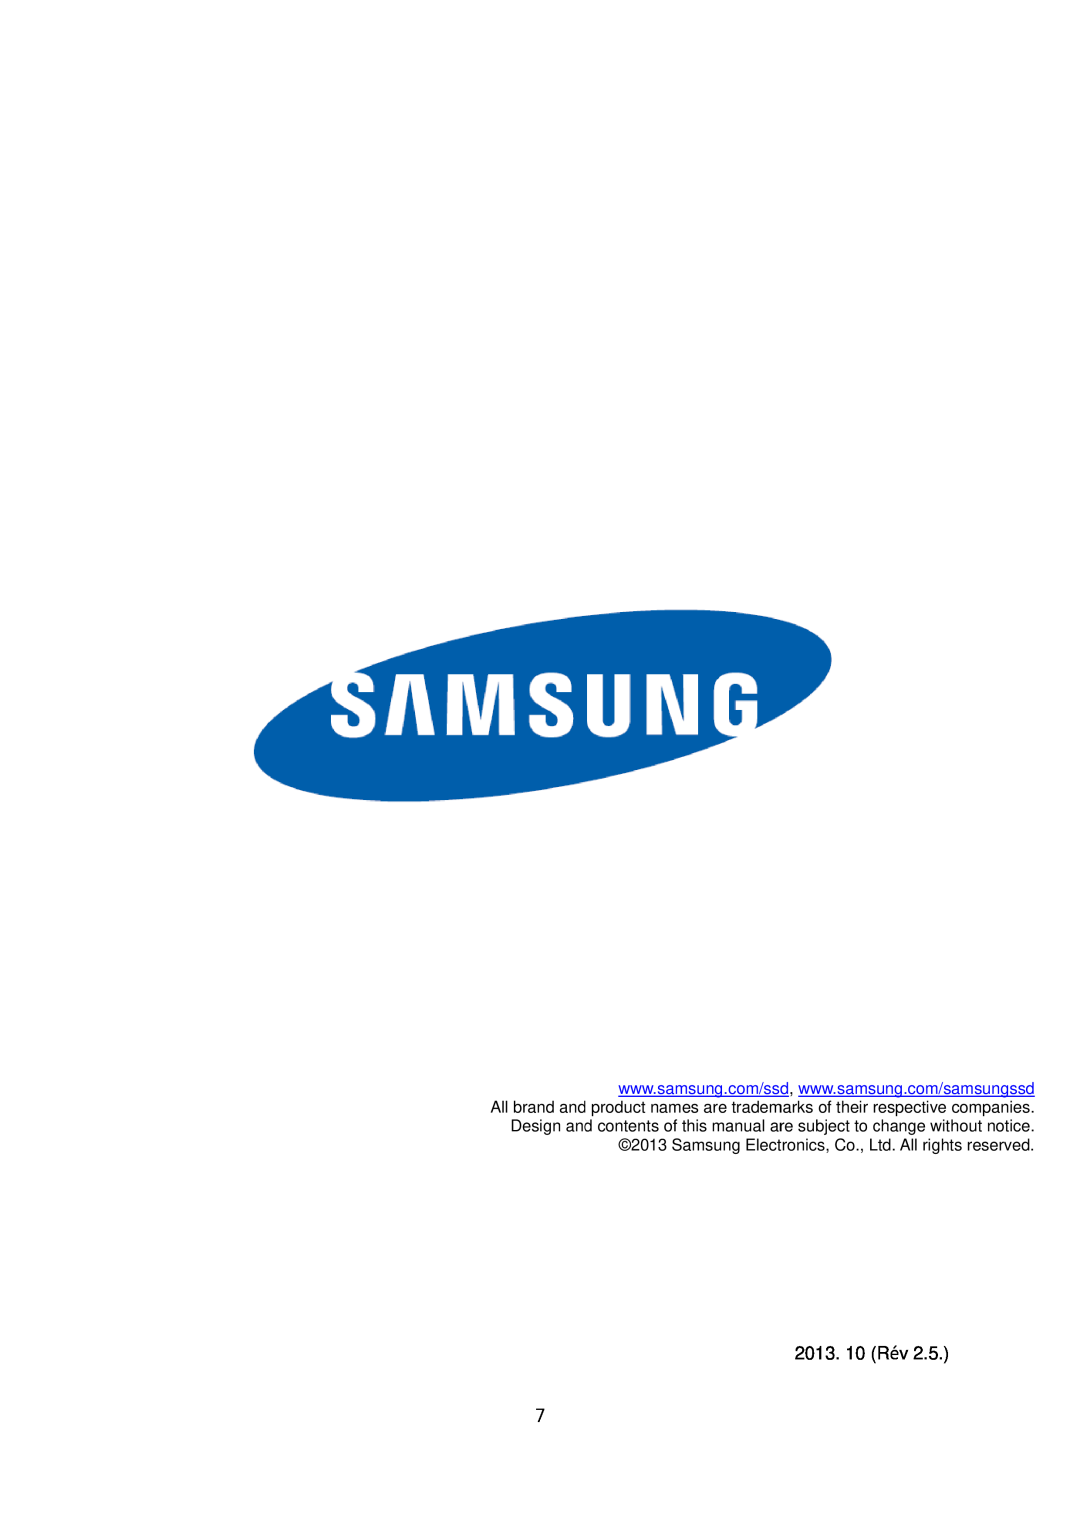 Samsung MZ-7TD256KW, MZ-7TD500BW, MZ-7TD250KW, MZ-7TD120KW, MZ-7TD128BW, MZ-7TD120BW, MZ-7TD120Z, MZ-7TD512KW manual 2013. 10 Rév 